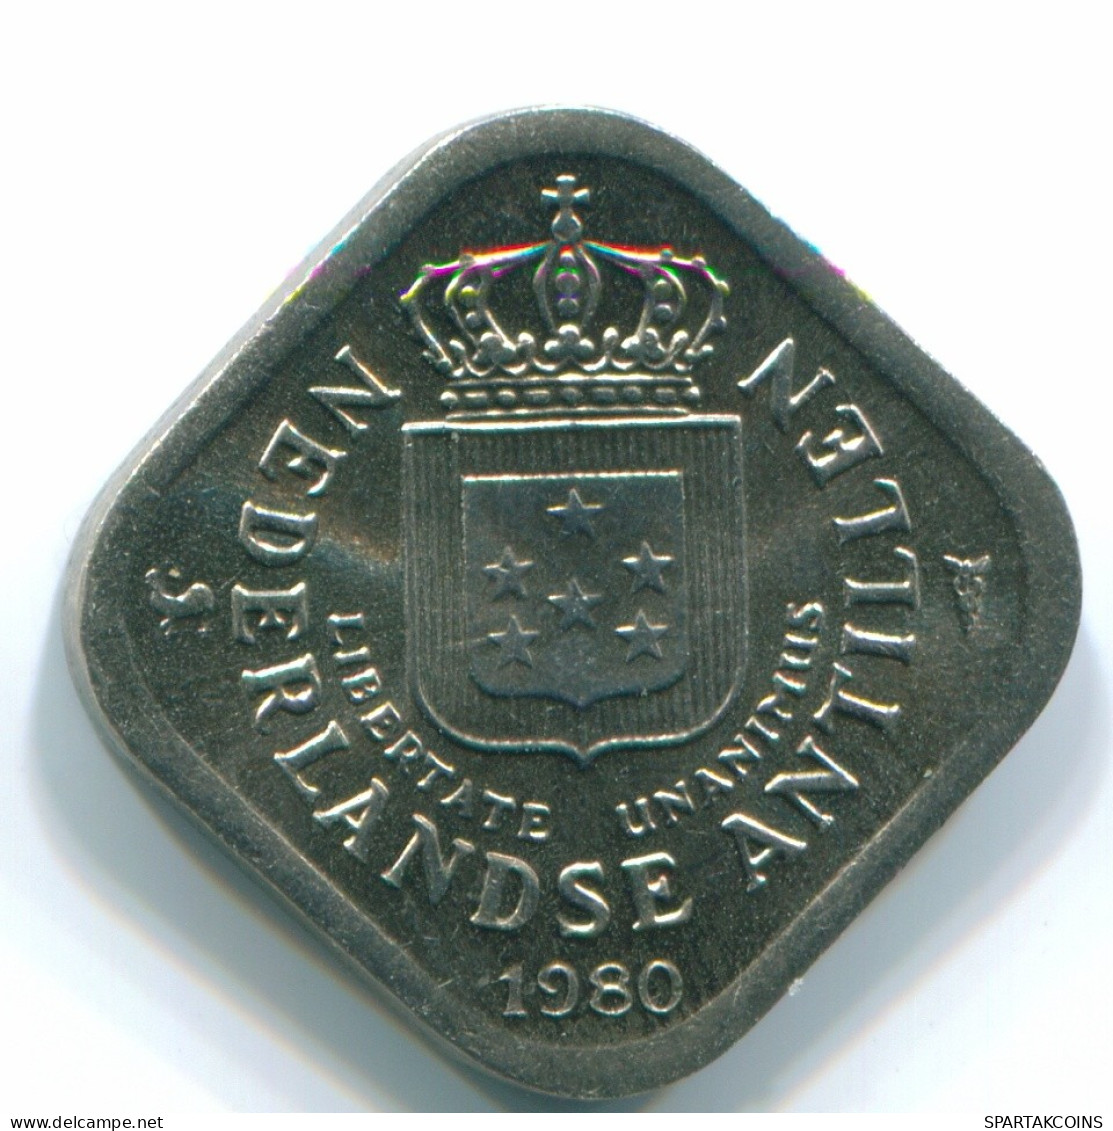 5 CENTS 1980 NETHERLANDS ANTILLES Nickel Colonial Coin #S12316.U.A - Niederländische Antillen